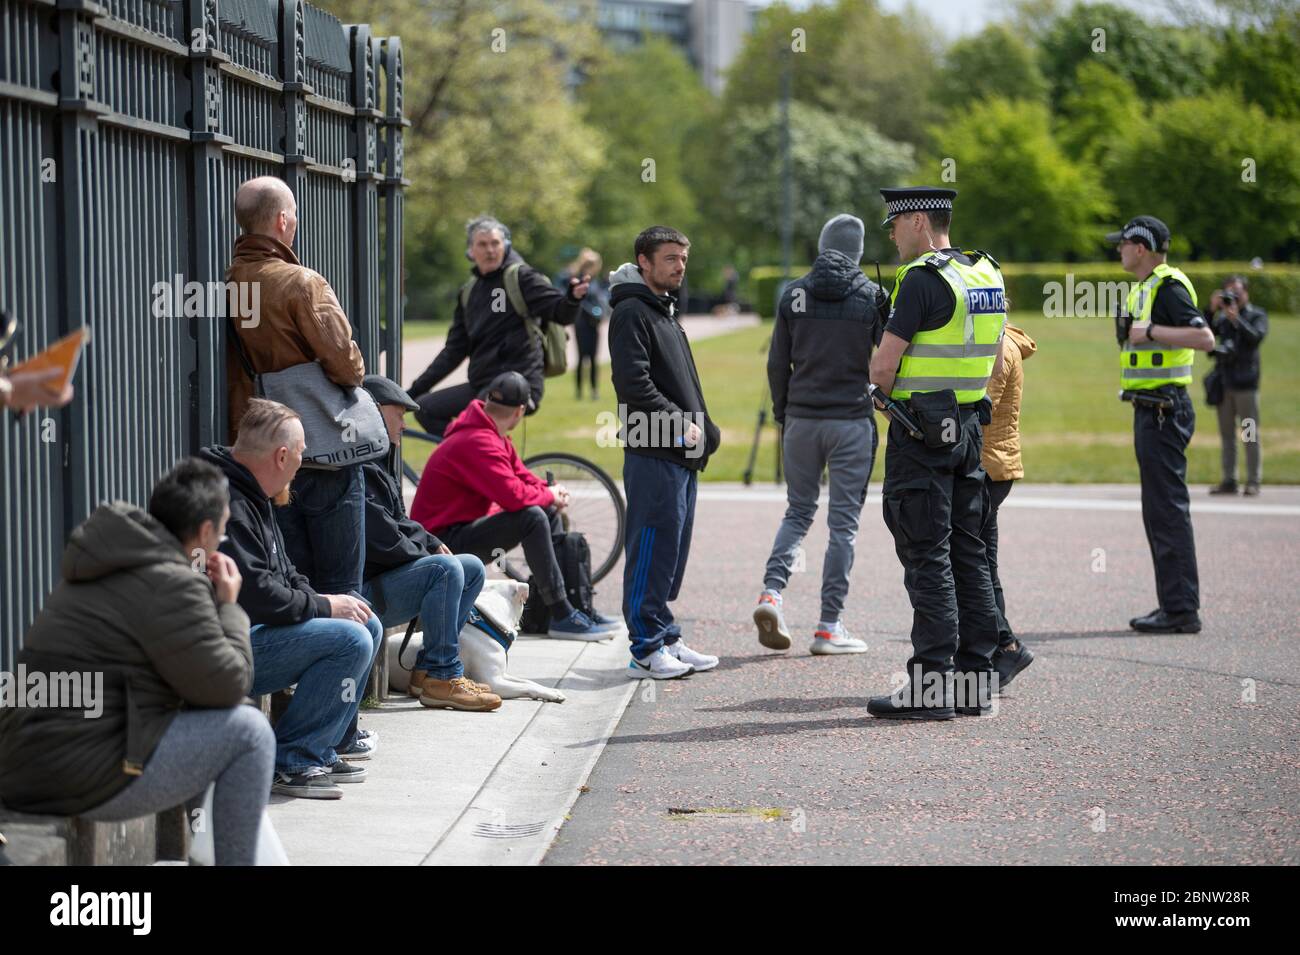 Pattuglia la polizia Glasgow Green, dove i membri del pubblico si sono riuniti, come parte di incontri che si svolgono questo fine settimana in tutto il Regno Unito contro le restrizioni pandemiche di coronavirus dopo l'introduzione di misure per mettere il paese fuori blocco. Foto Stock